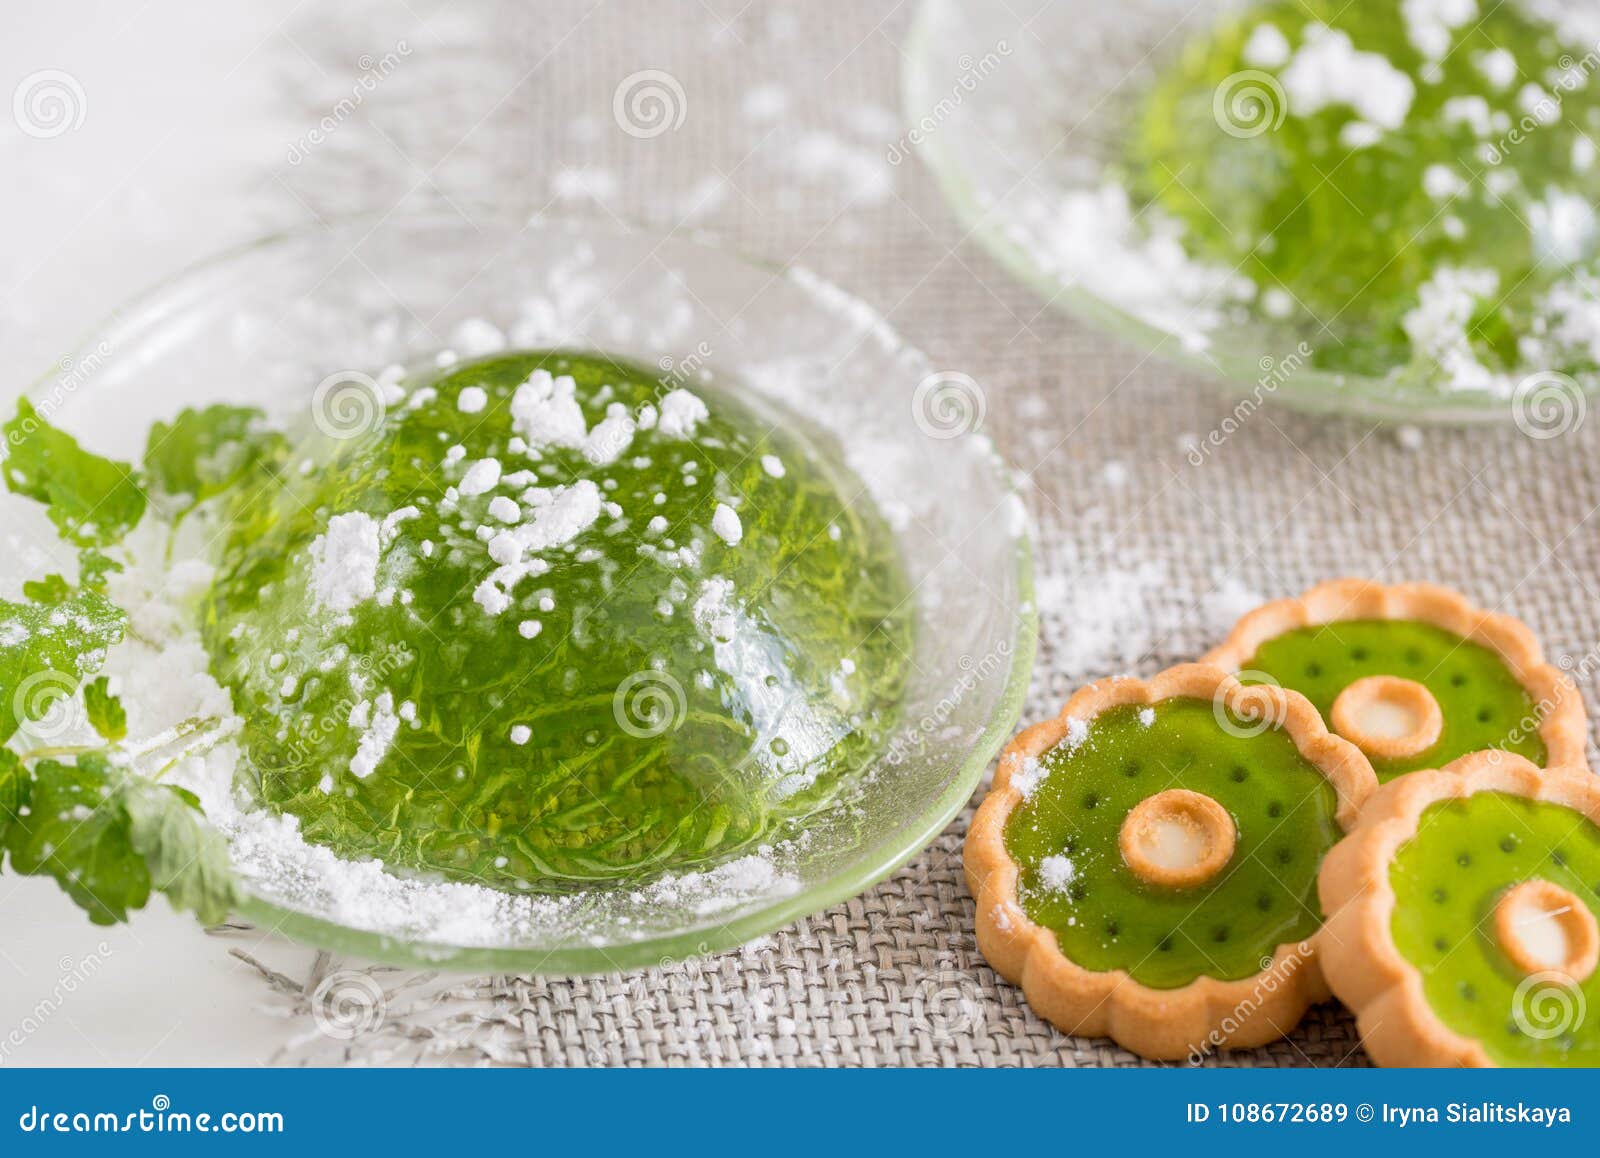 Green jelly. Зеленый студень. Зеленое желе на белом фоне. Желе из зеленого чая. Мятный студень.